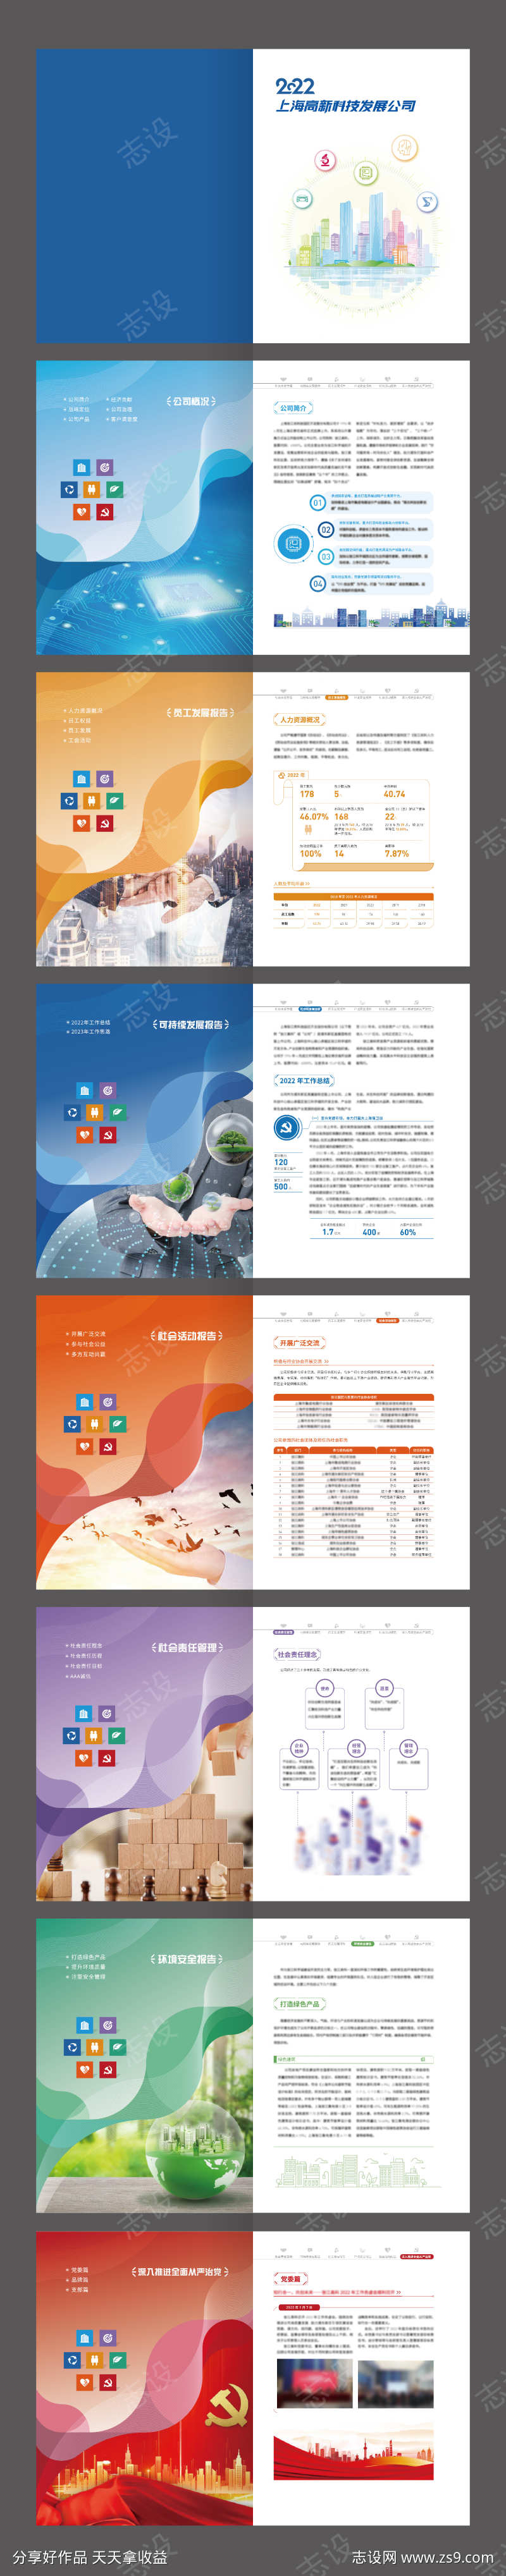 上海高新科技研发企业宣传画册